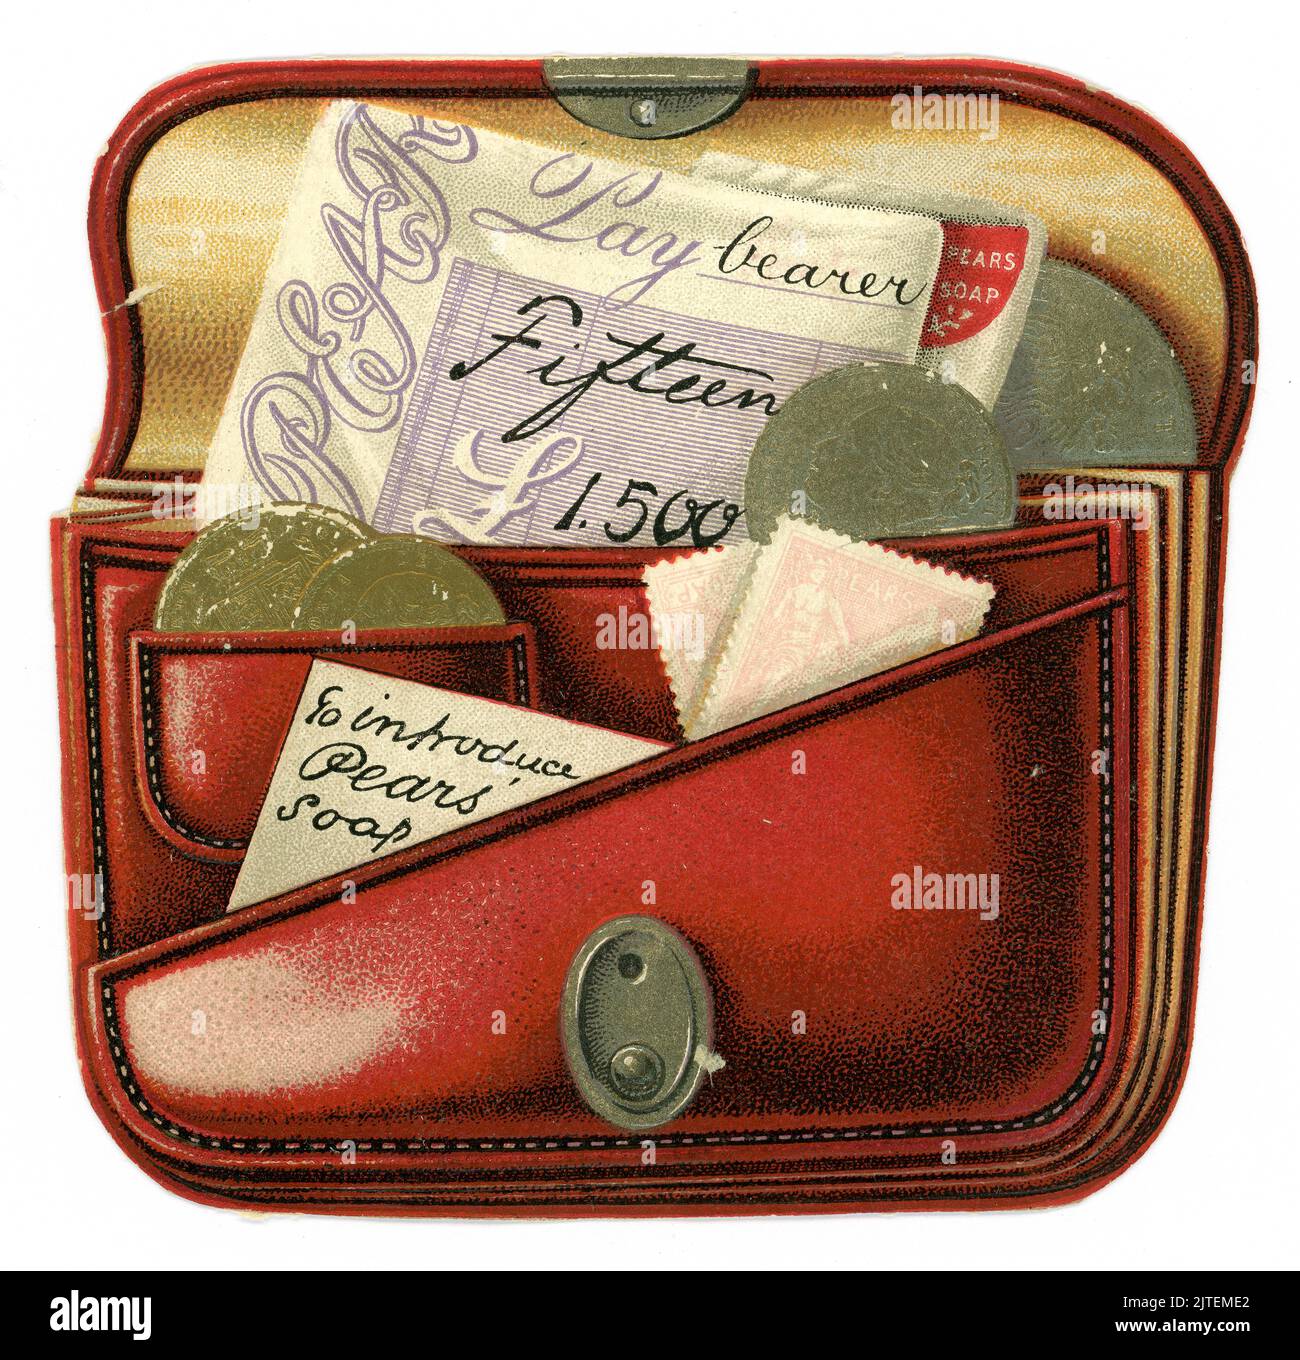 Original viktorianische Werbeartikel gestanzte und geprägte Werbekarte einer roten Geldbörse oder Brieftasche mit Verschluss, die den Inhalt enthält: Goldfürsten und silberne Schillinge, mit dem Kopf von Königin Victoria, einem Scheckstempel mit Birnen-Werbung auf ihnen (verblasst) und einer Notiz „um Sie mit Pear's Soaps vertraut zu machen“. Auch in einem Magazineinsatz gedruckt. Birnen war die weltweit erste durchscheinende Seife auf dem Massenmarkt und ist eine britische Marke. Großbritannien um 1895 Stockfoto